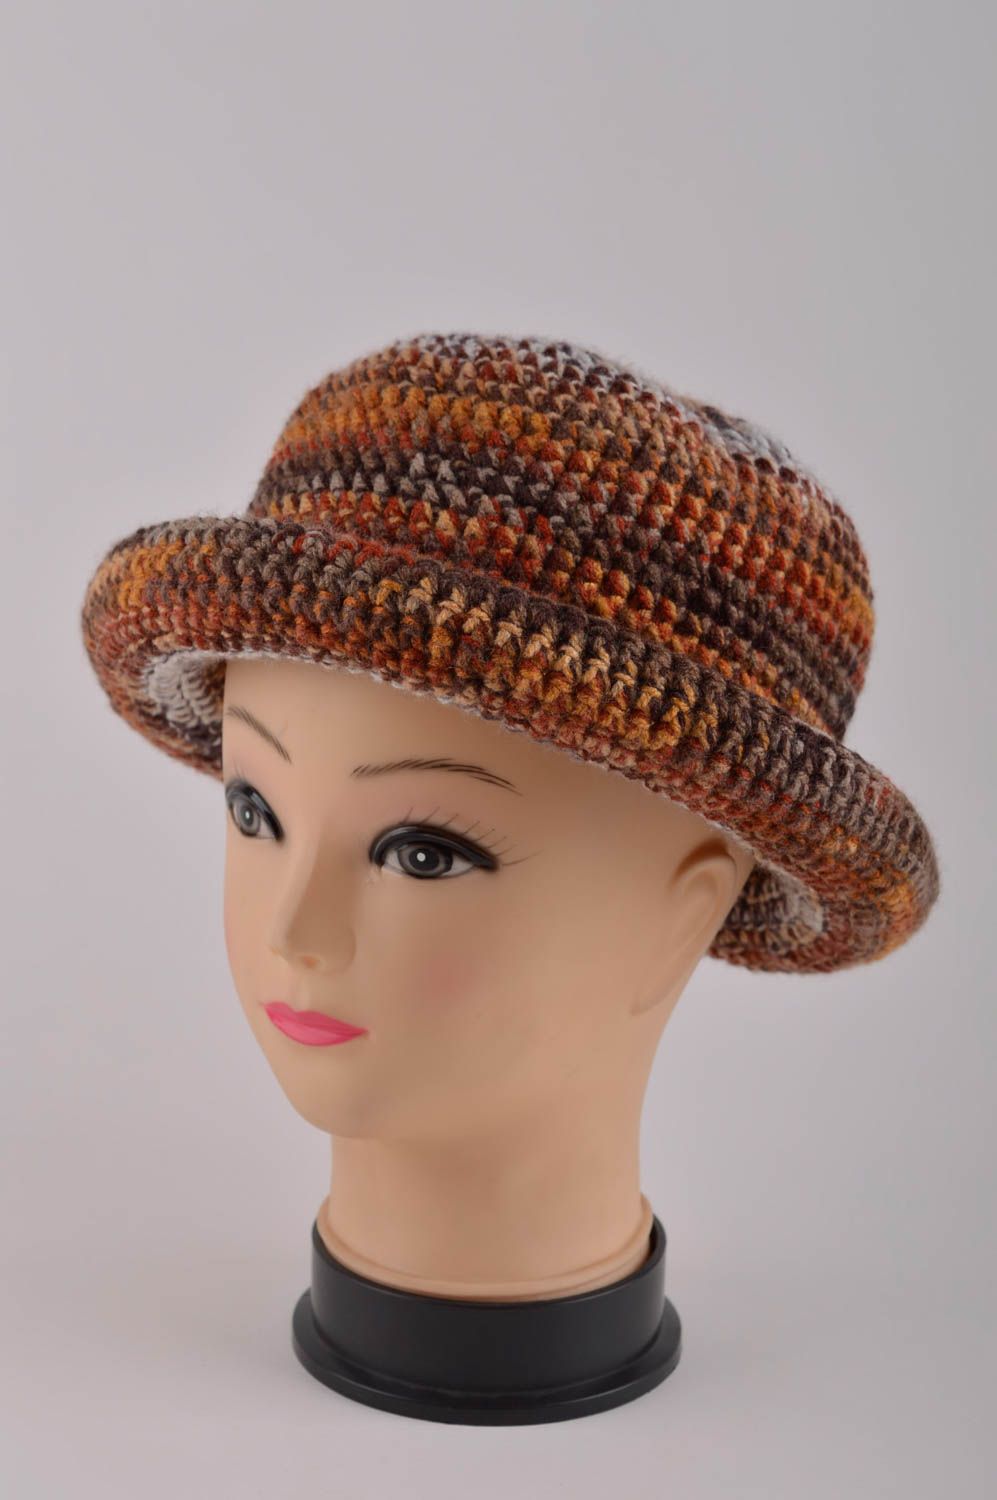 Handmade gehäkelter Hut Damen Accessoire ausgefallener Hut für Winter stilvoll foto 2